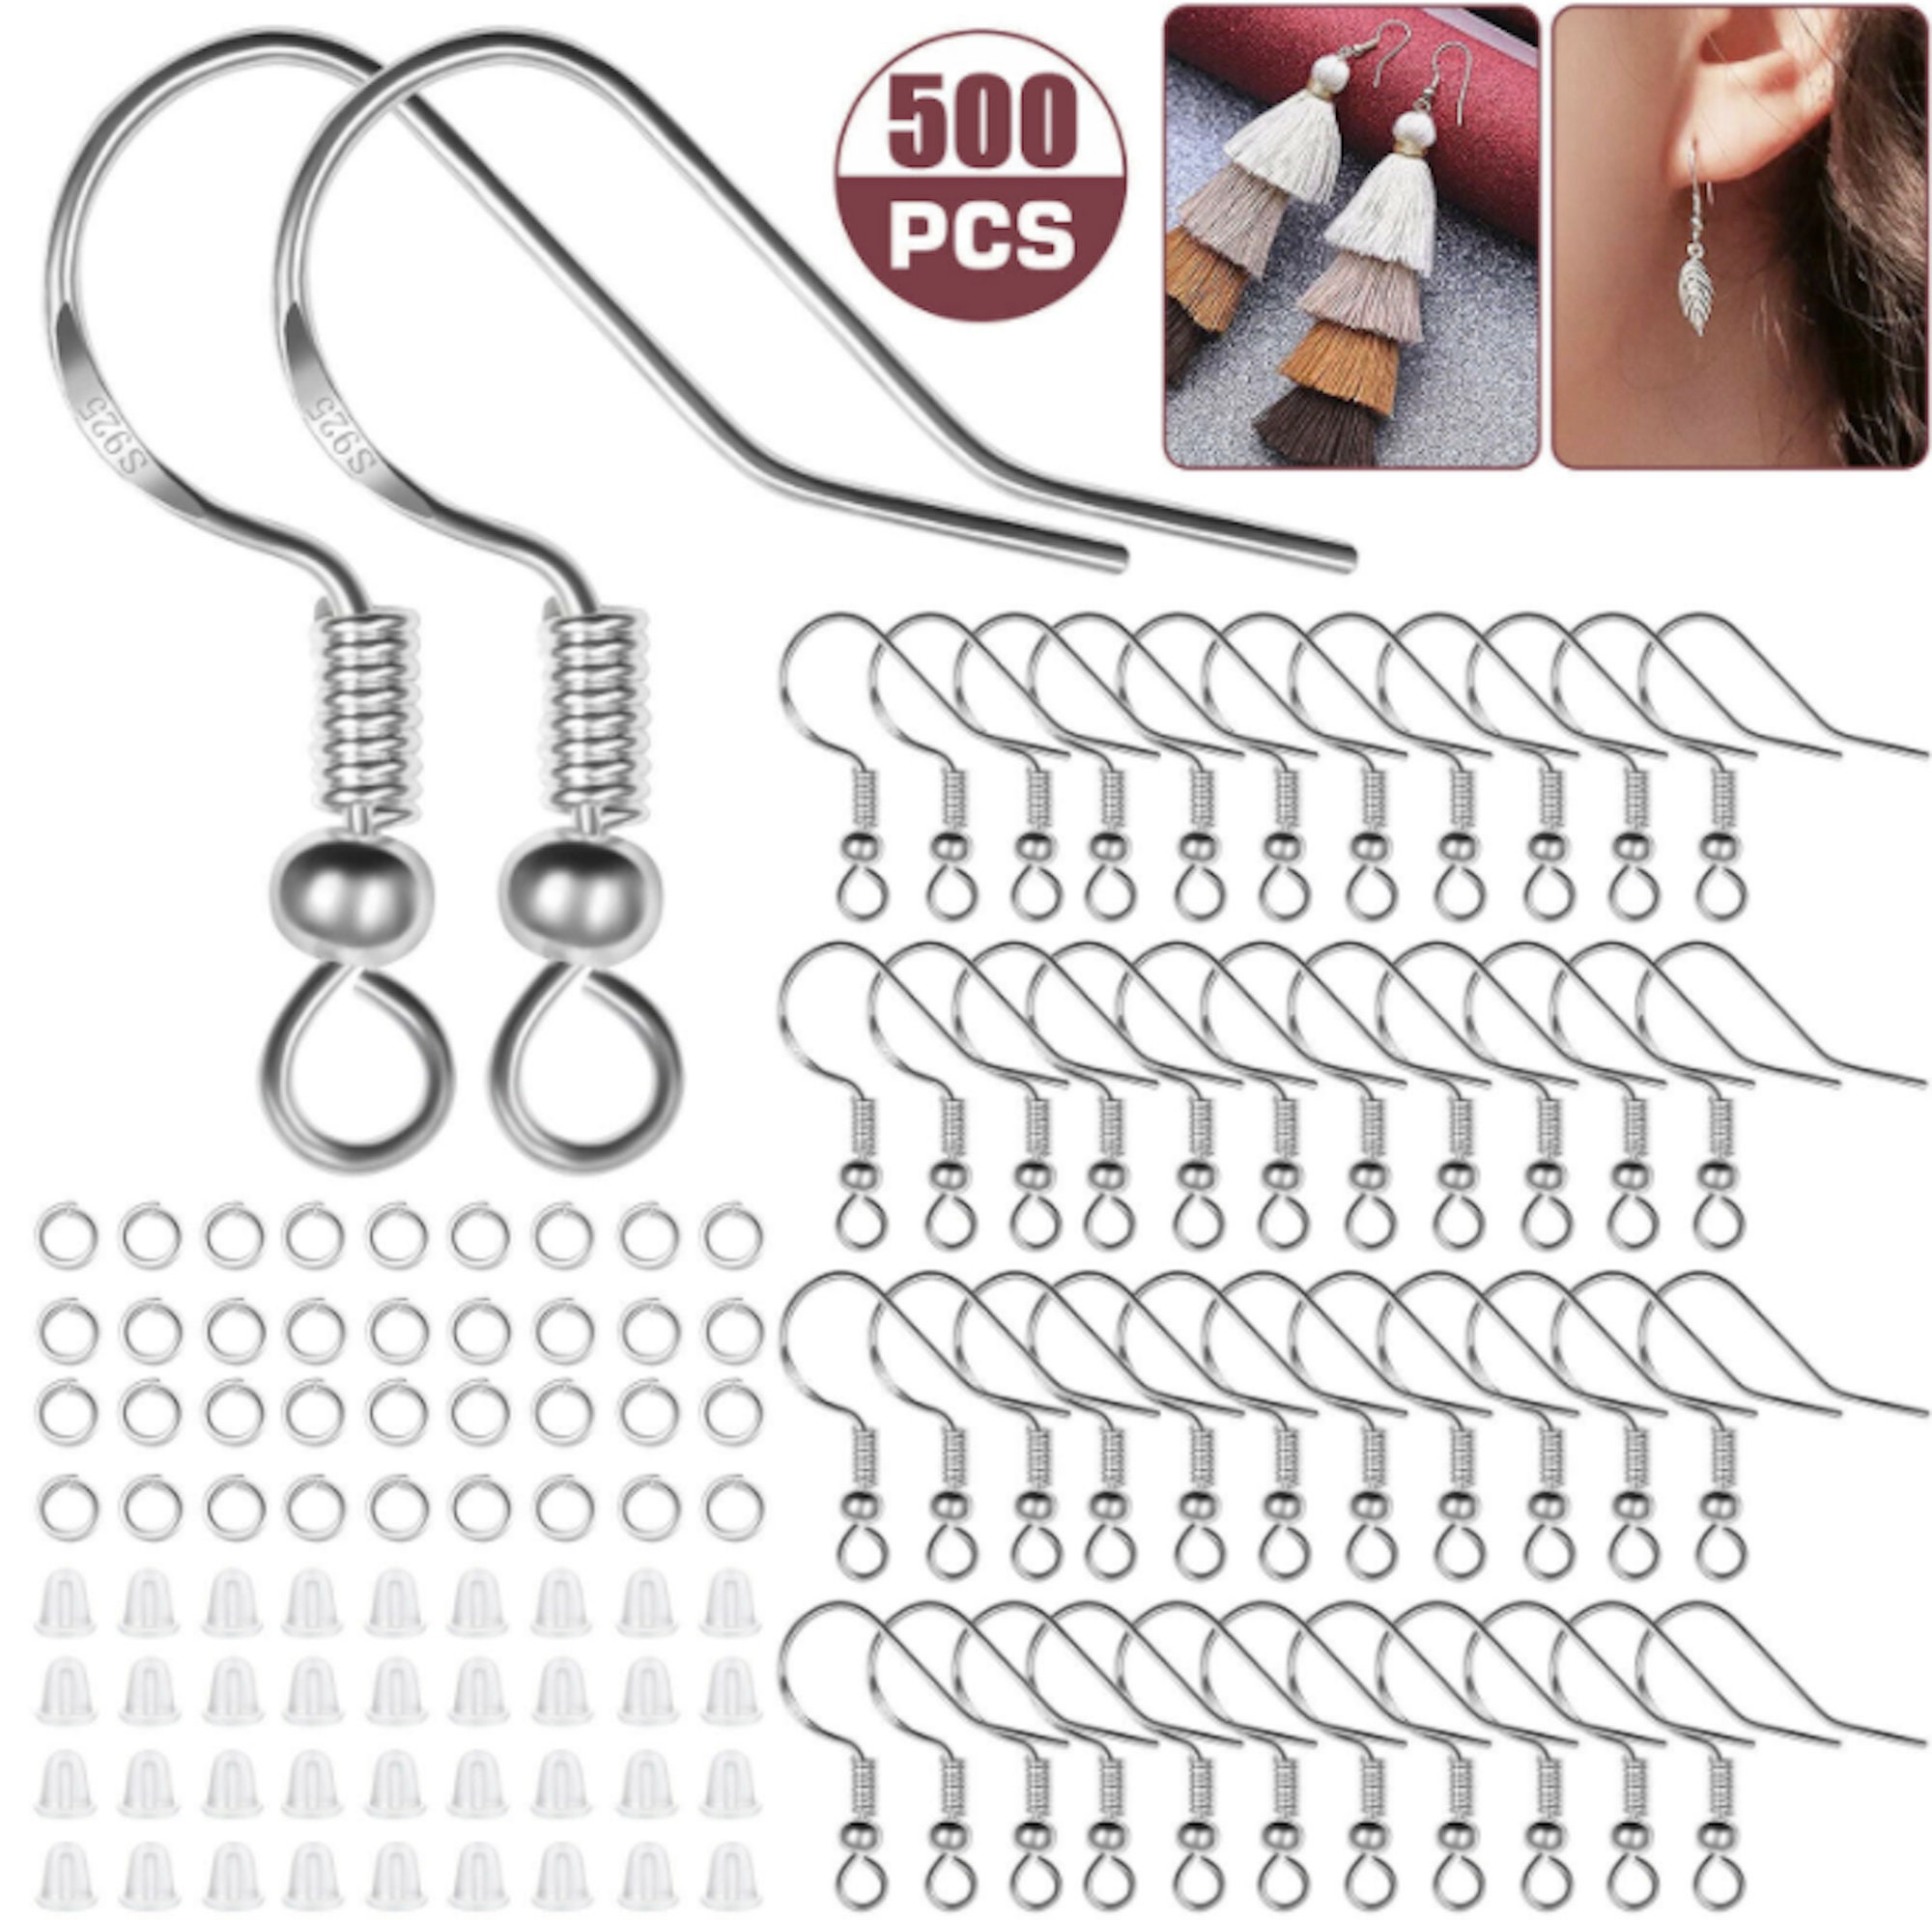 Jewelry Repair Kit -  UK